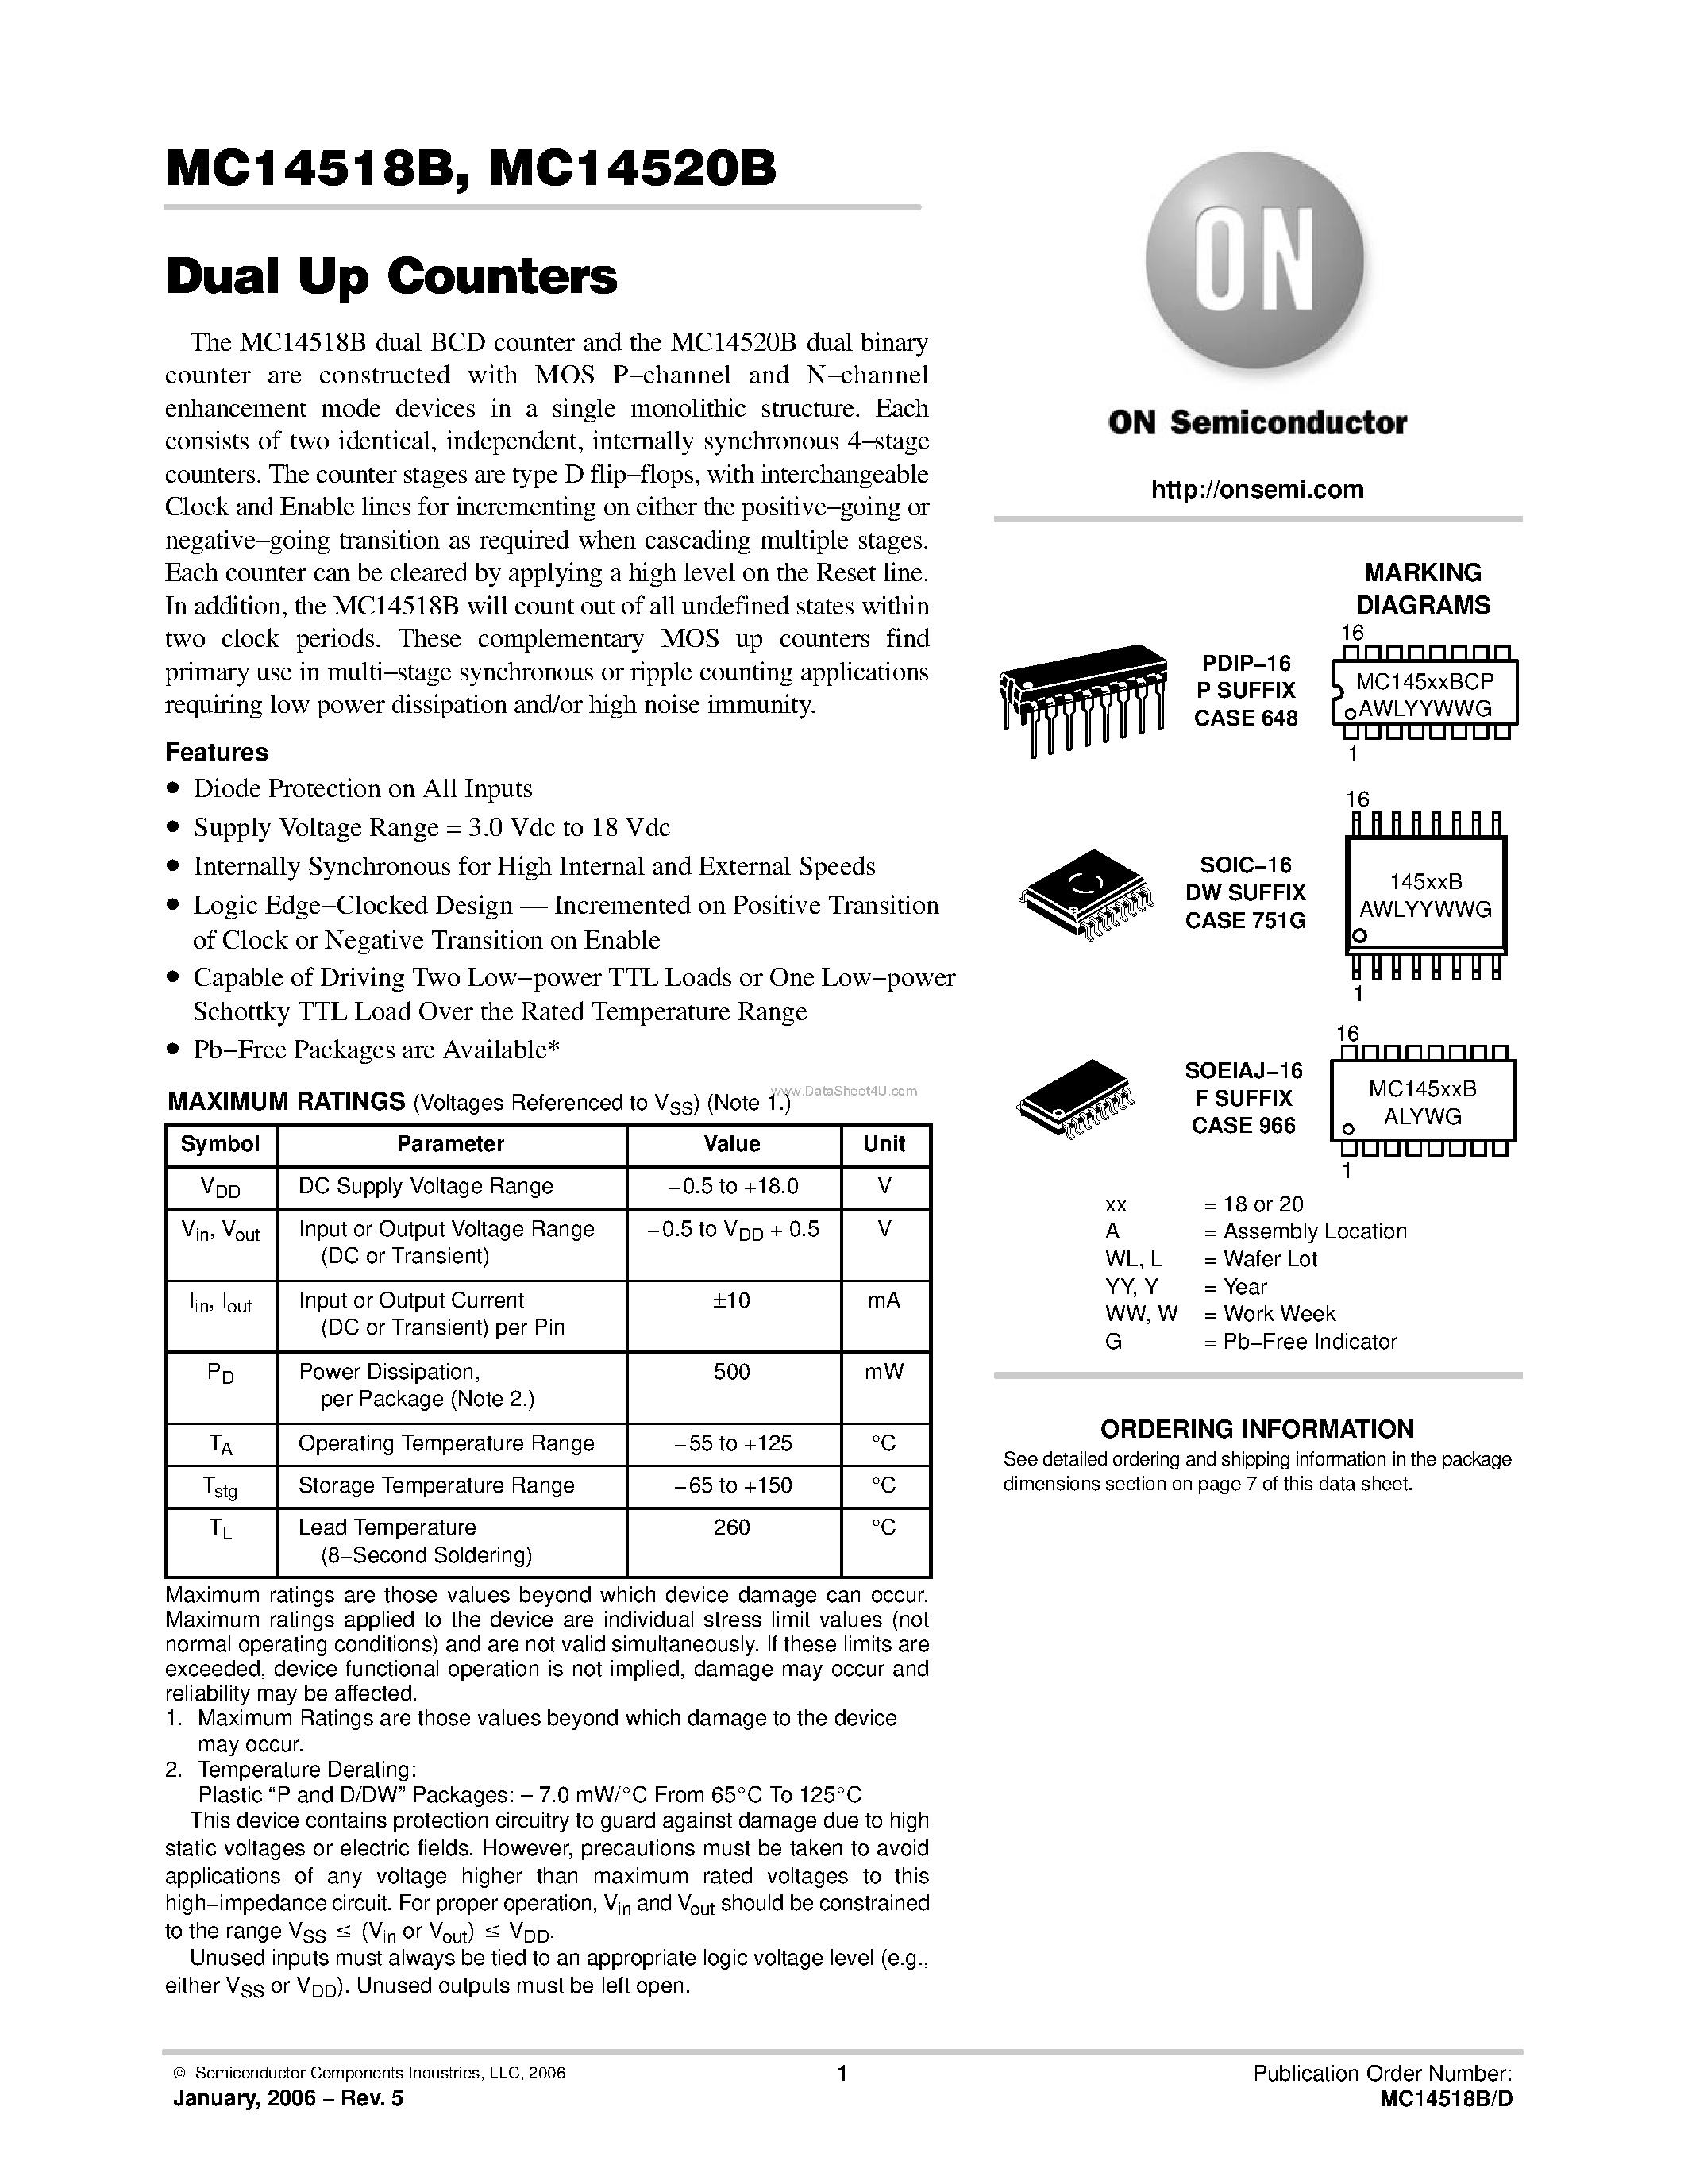 Datasheet MC14518B - (MC14518B / MC14520B) Dual Up Counters page 1